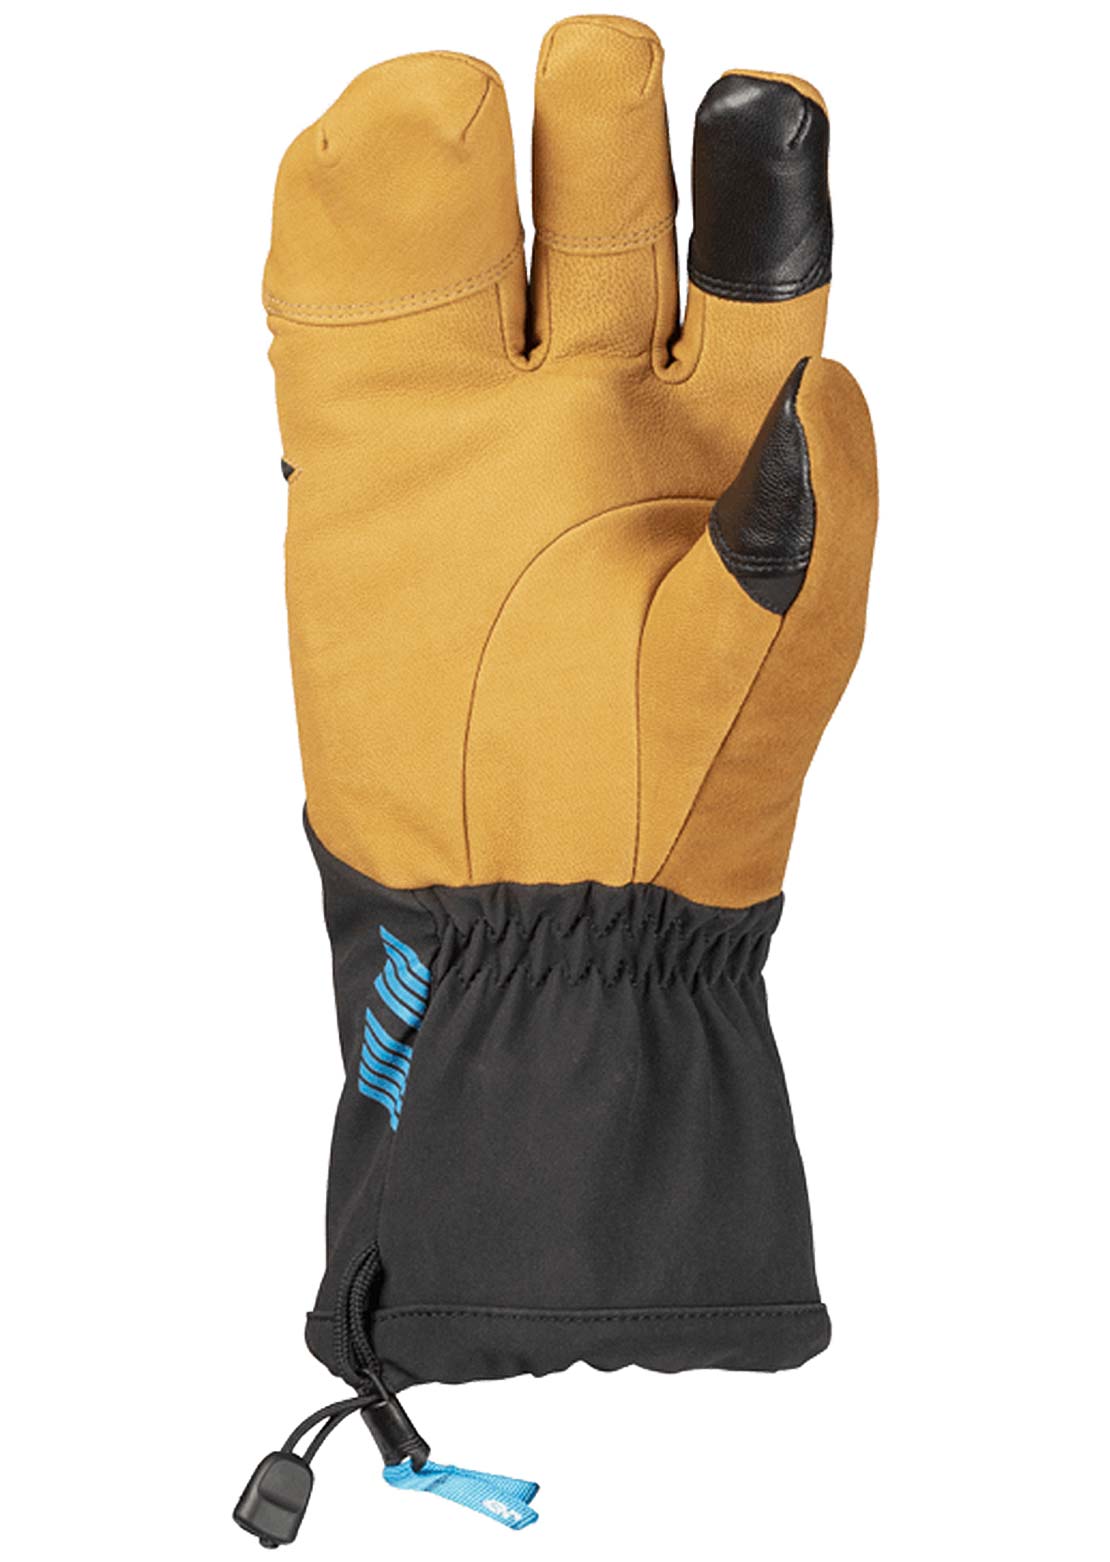 45NRTH Sturmfist 4 Full Finger Gloves Leather